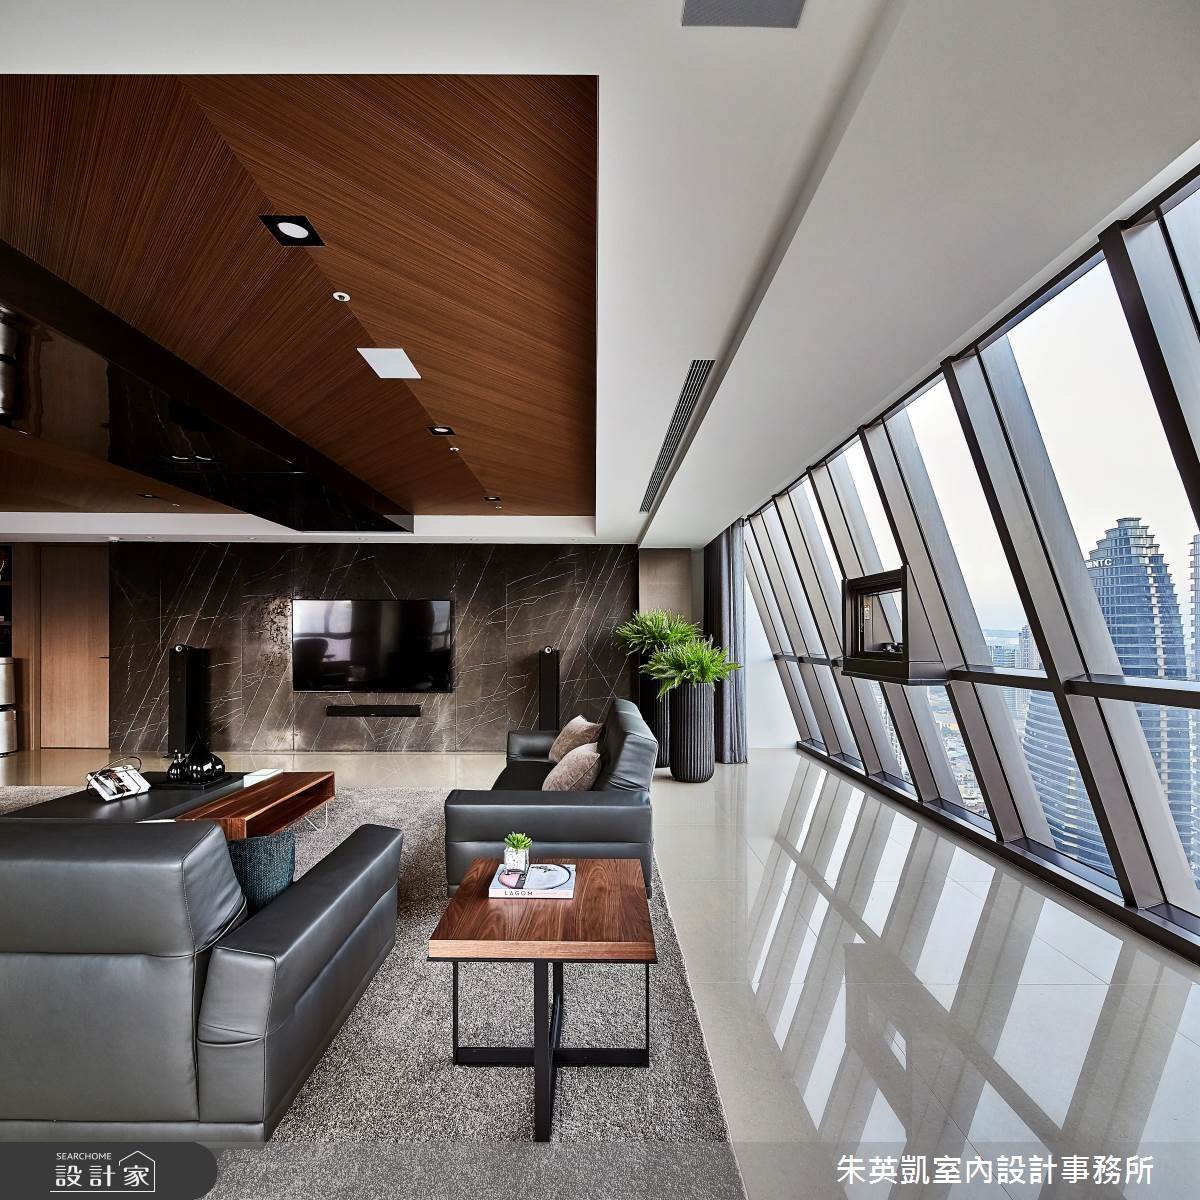 客廳天花板與電視牆利用自然材質串聯戶外景觀，使空間感更加開闊大器。